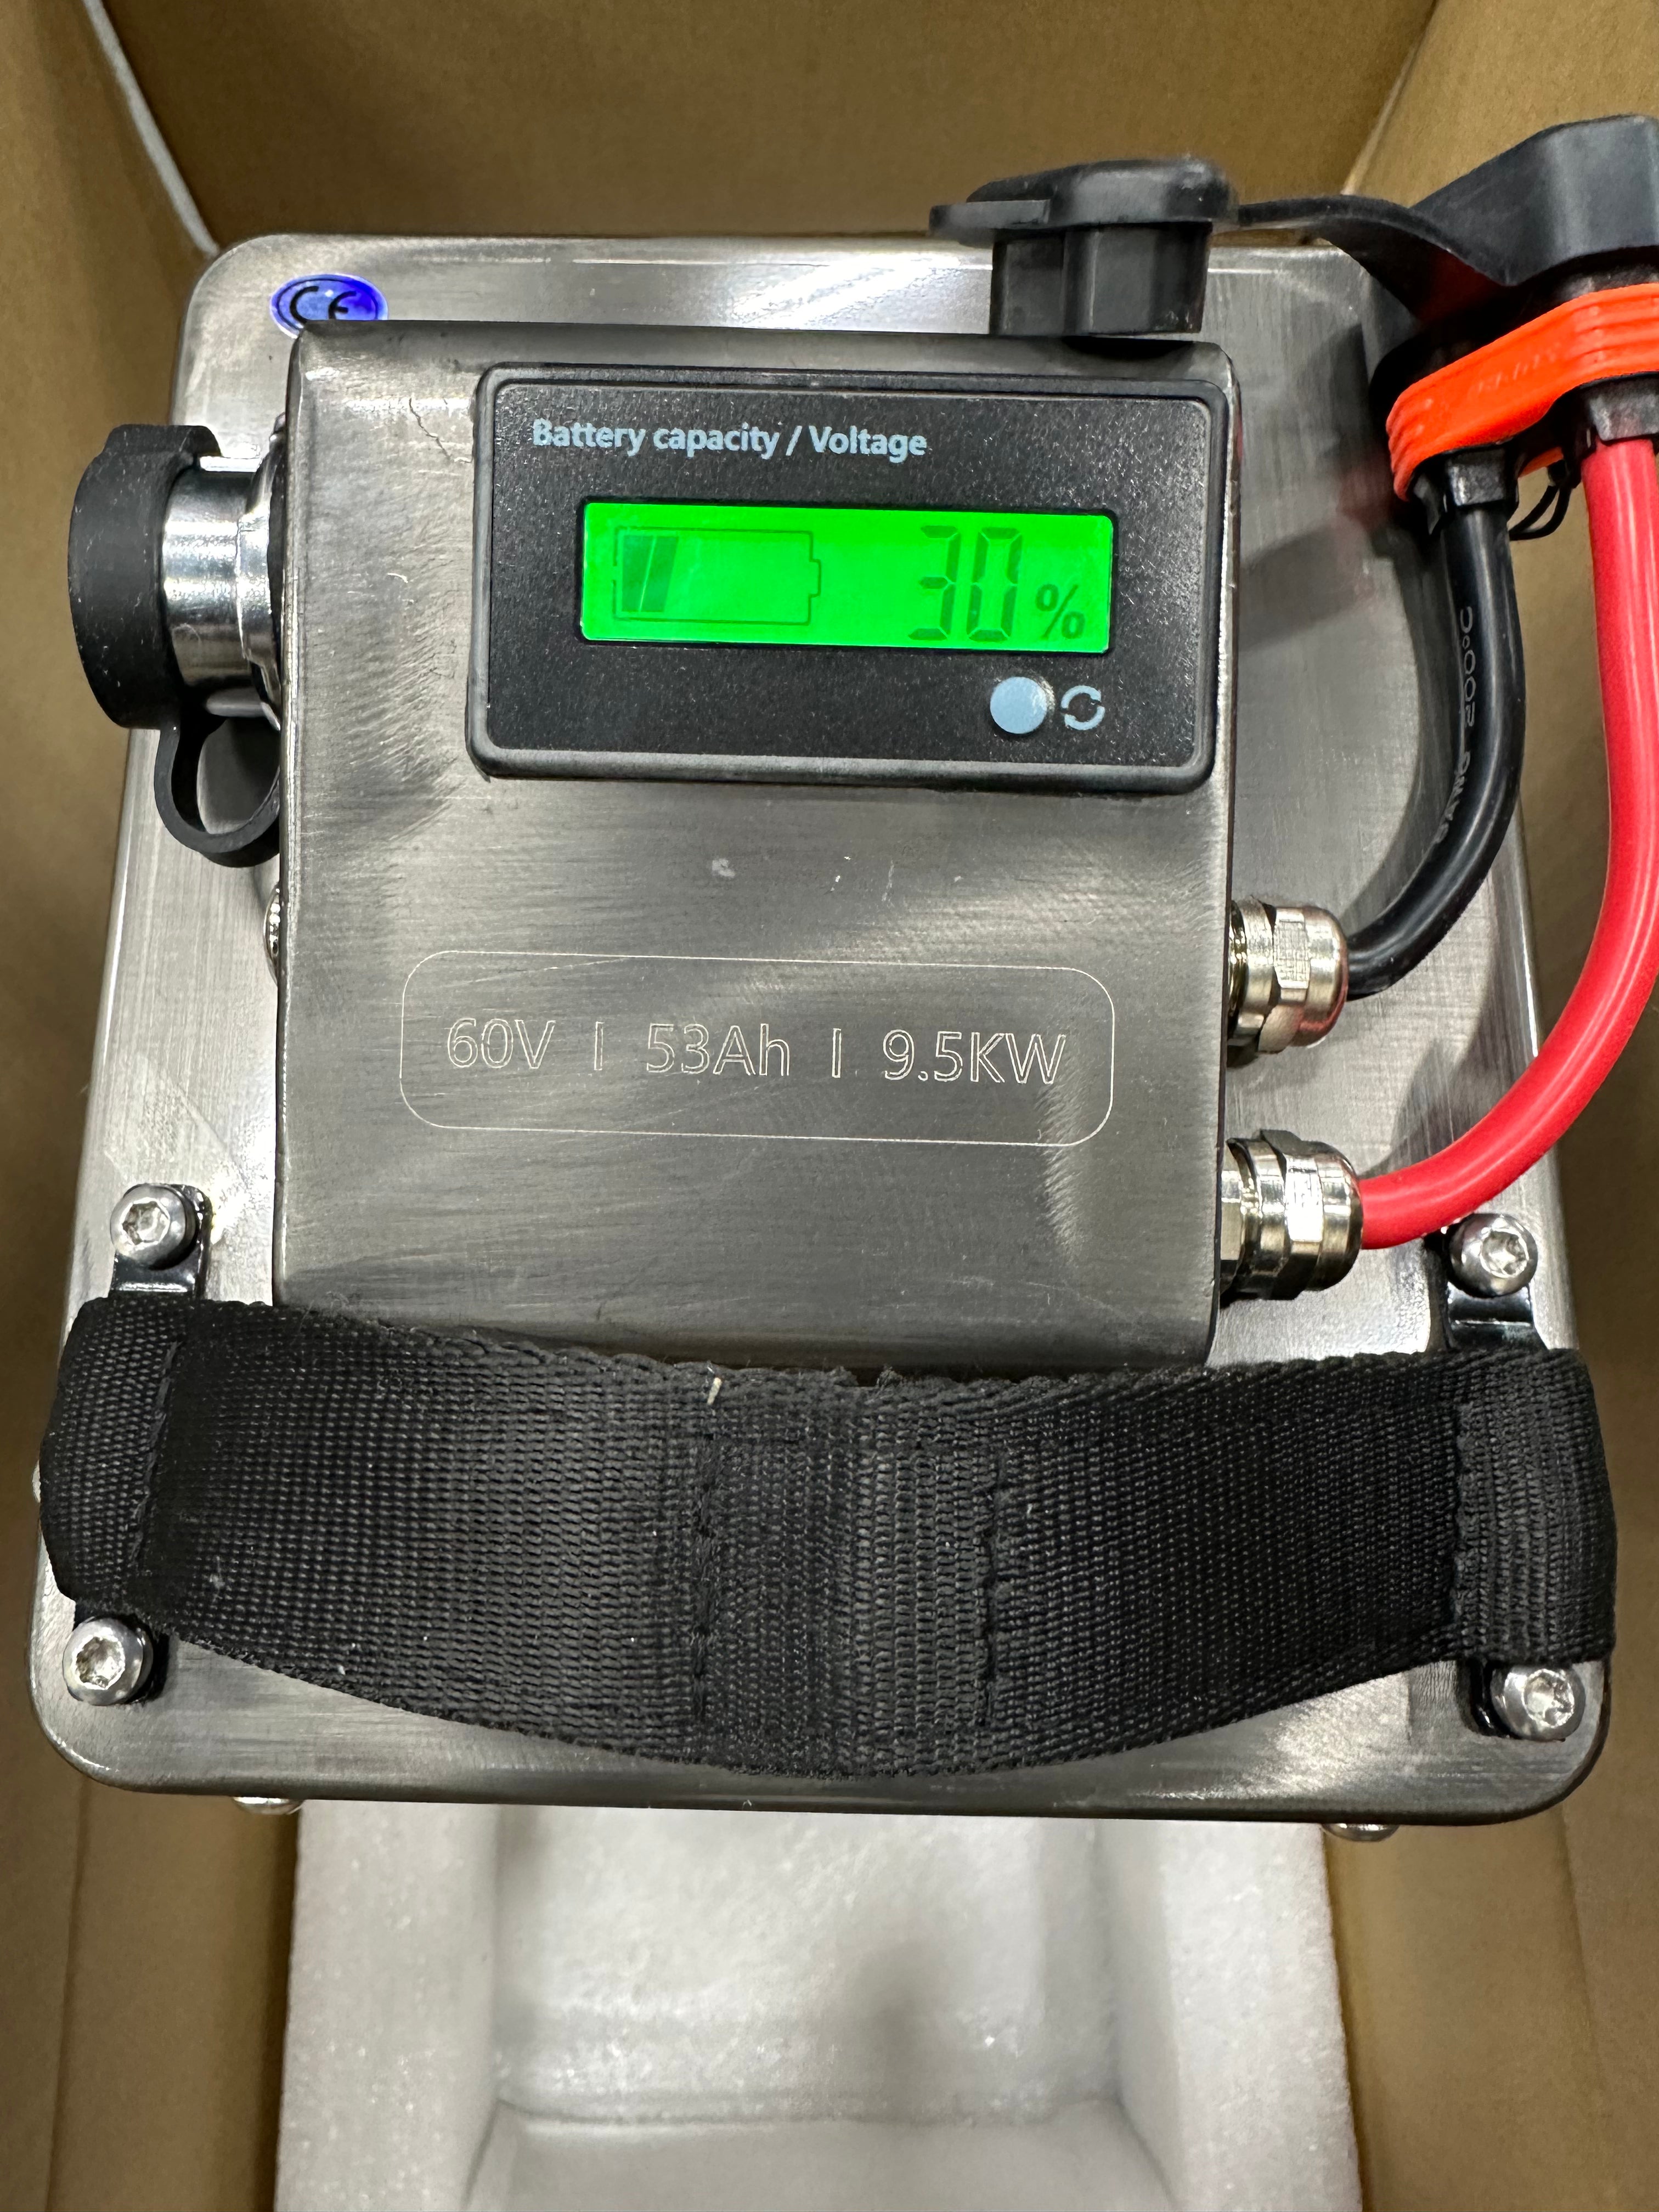 60v 53ah Battery for Surron Light Bee -  eWatt